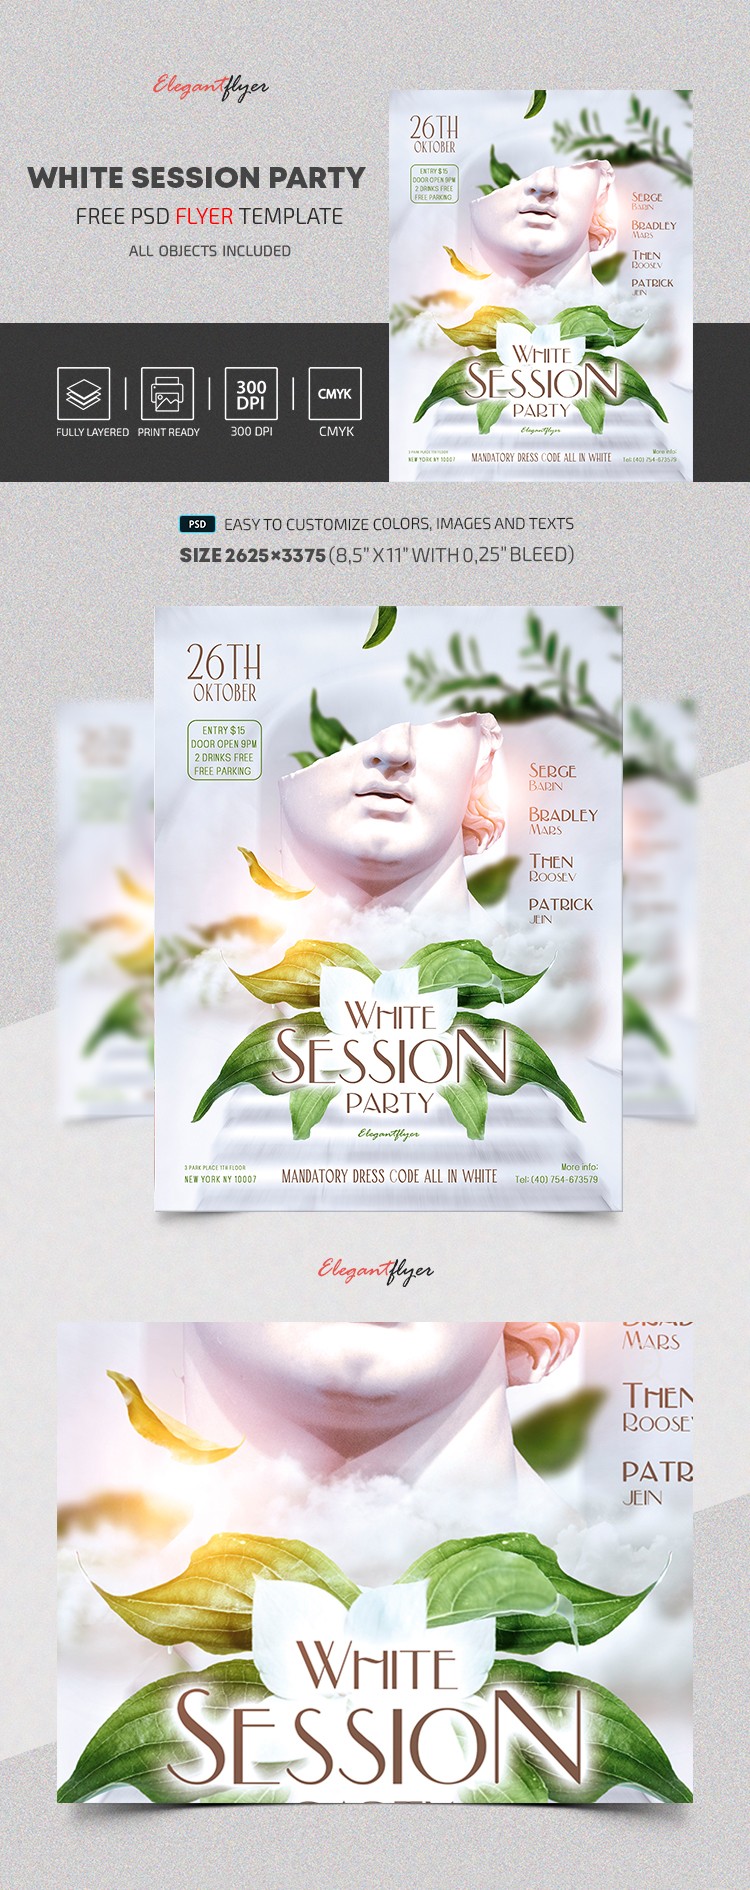 White Session Party Flyer by ElegantFlyer